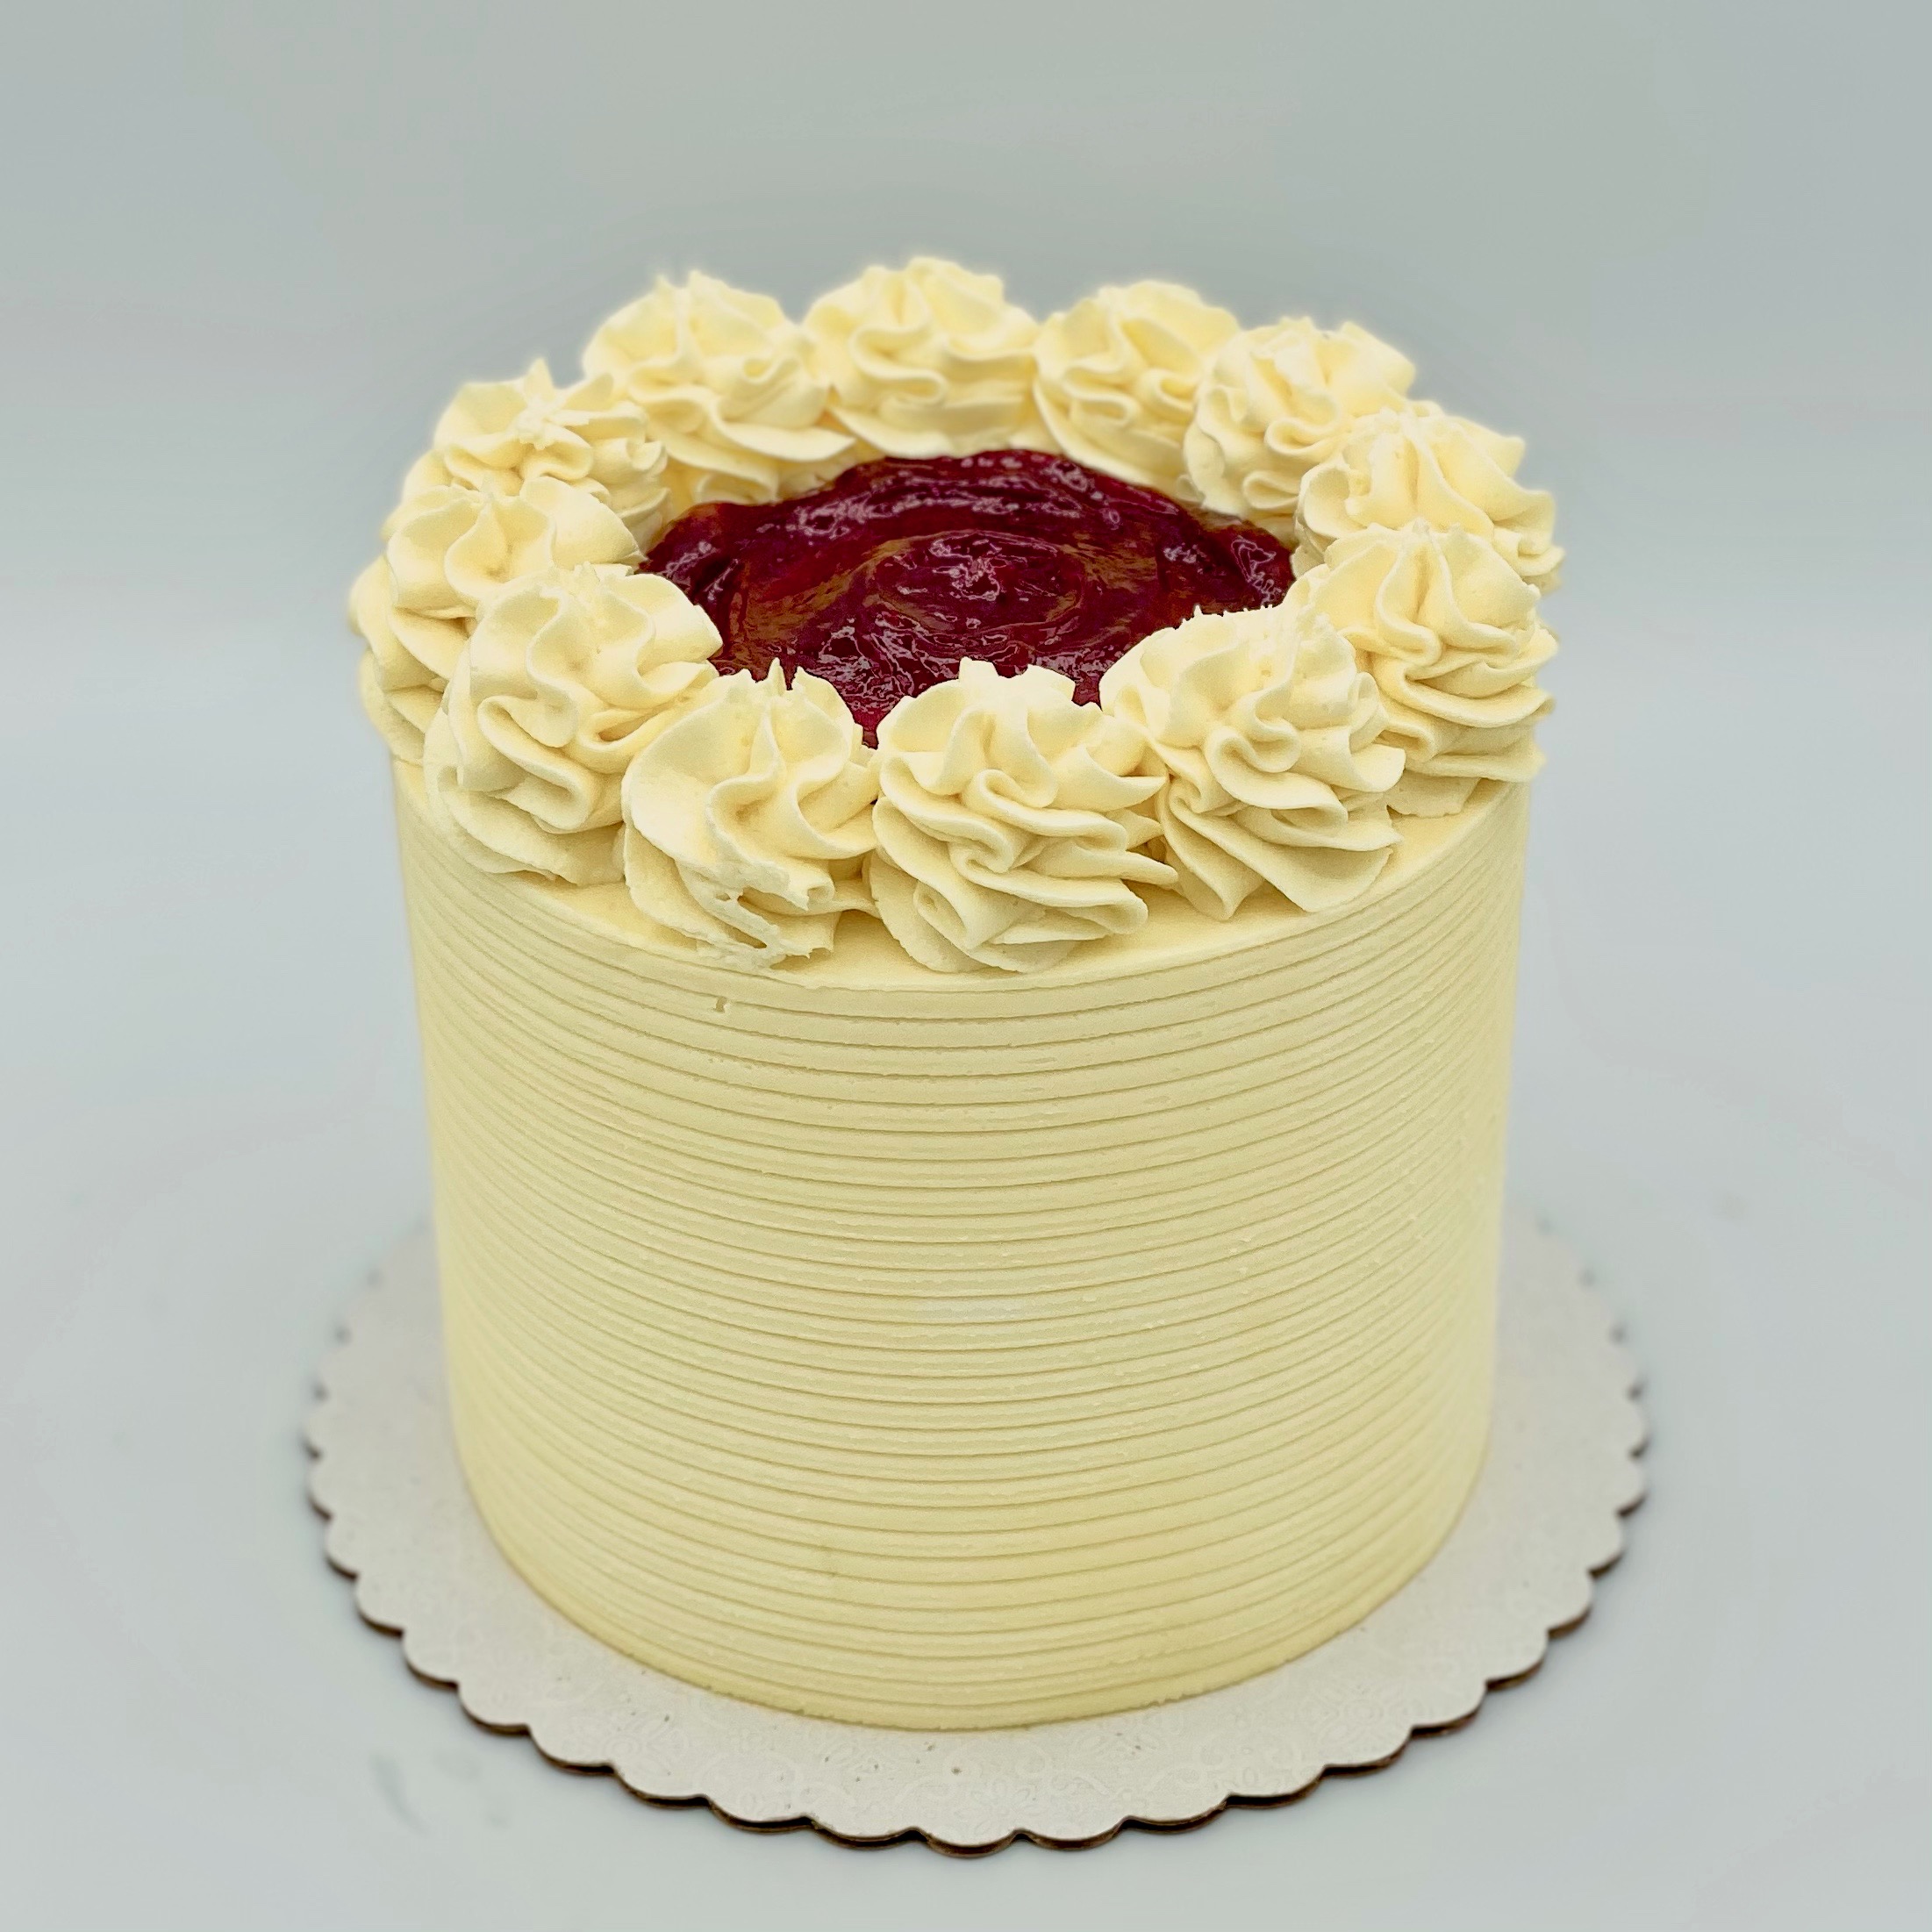 Lemon Raspberry Glitter Cake